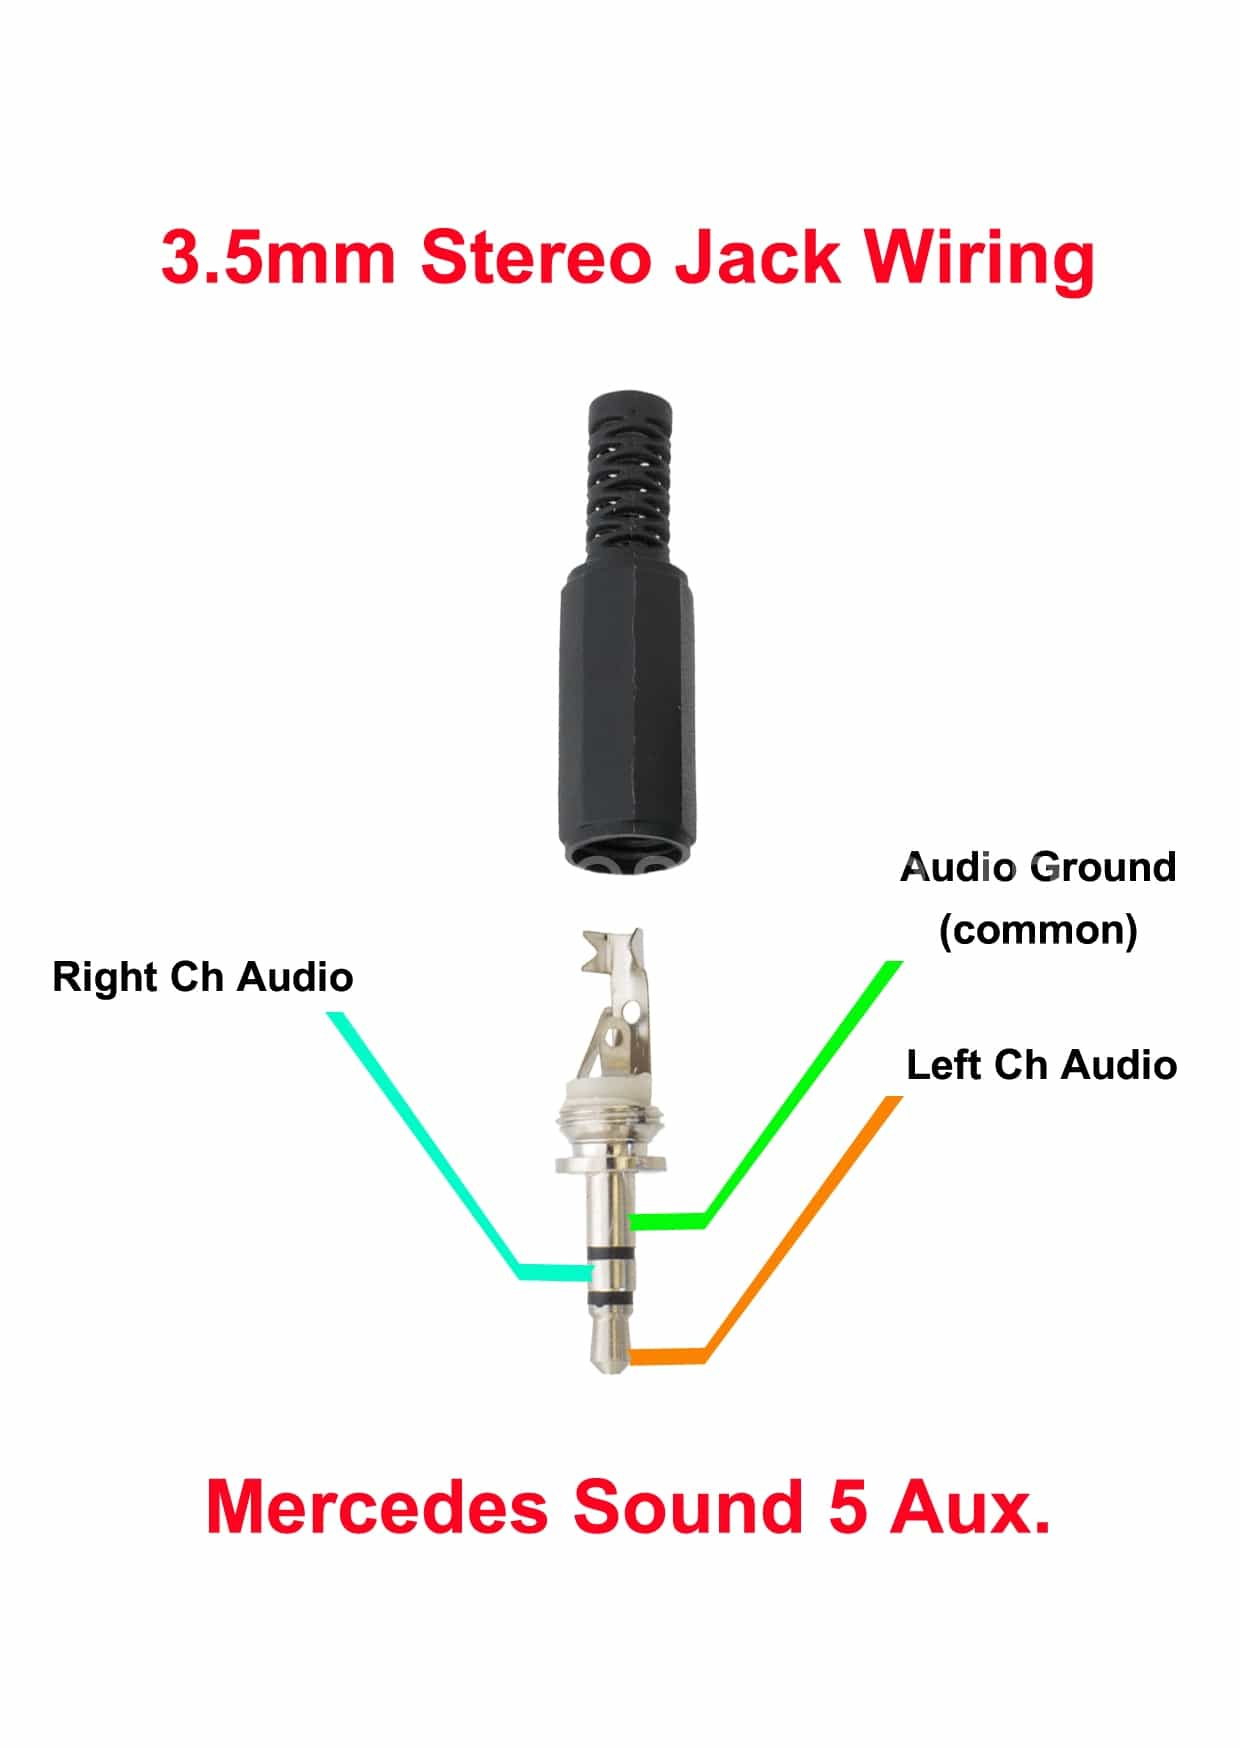 Stereo Headphone Jack Wiring Diagram - Wiring Diagram